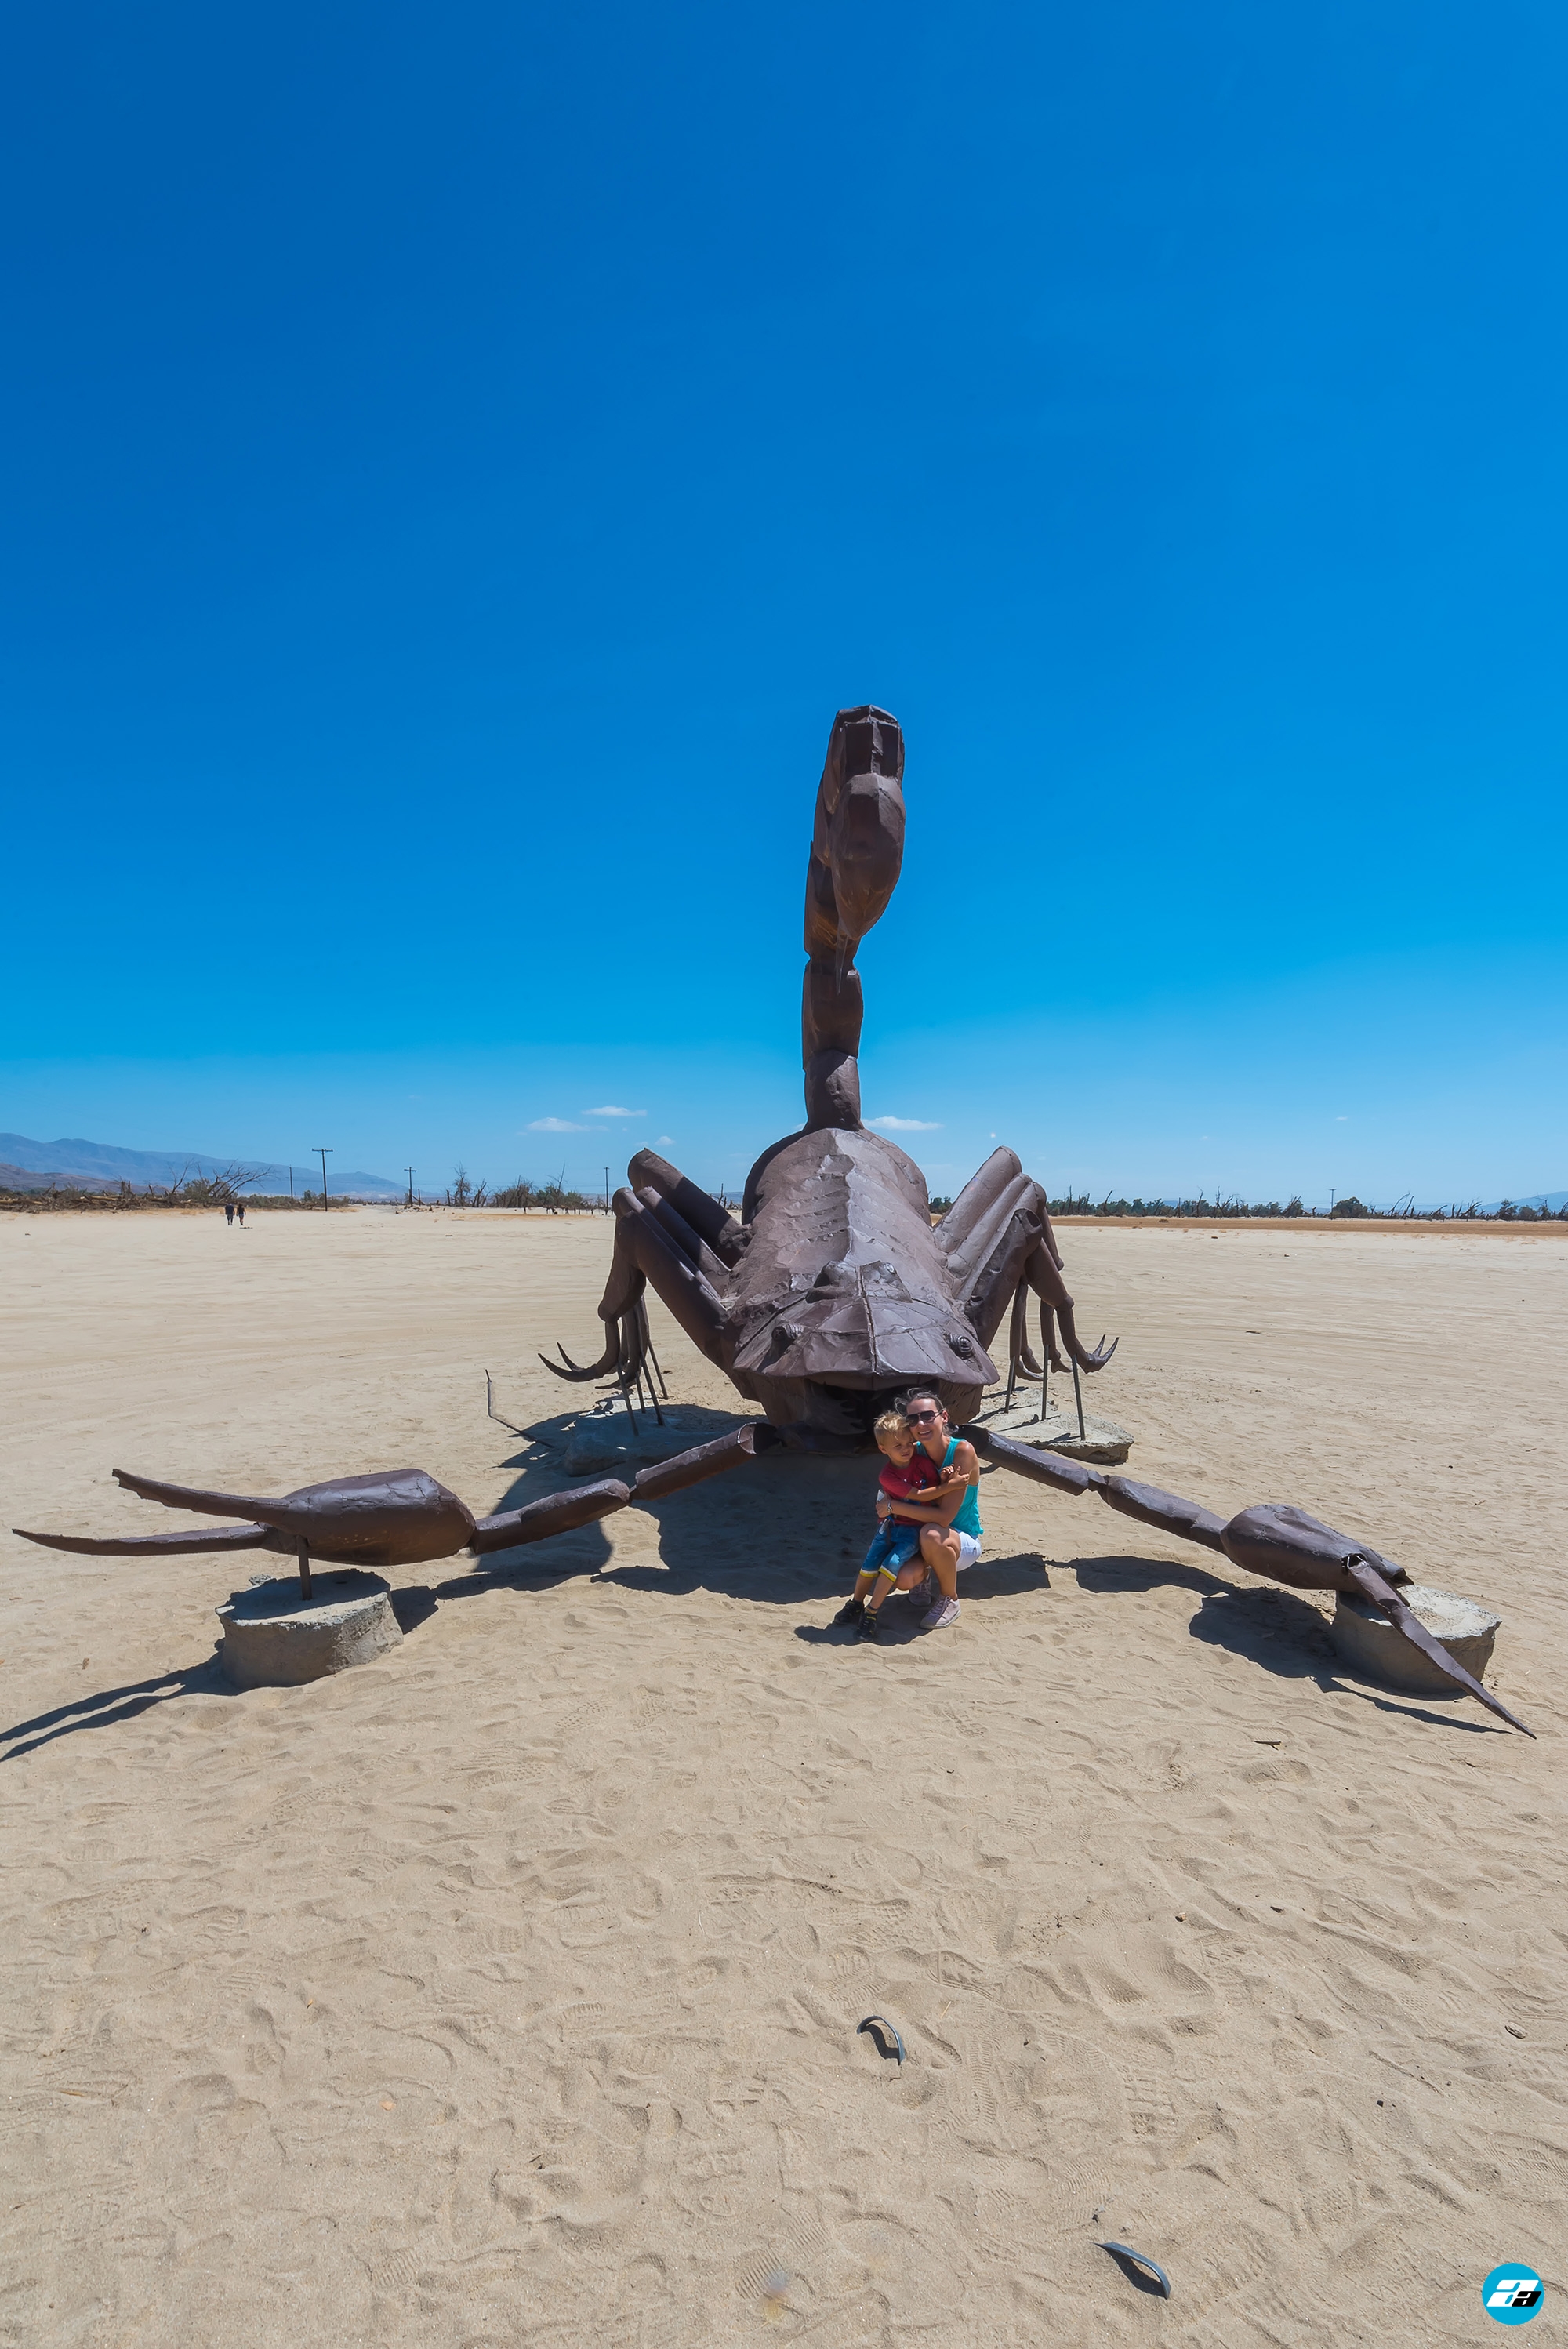 Anza-Borrego Desert, California, USA. Scorpion Statue. Ricardo Breceda Sculptures. Mother and Child. Family adventure.